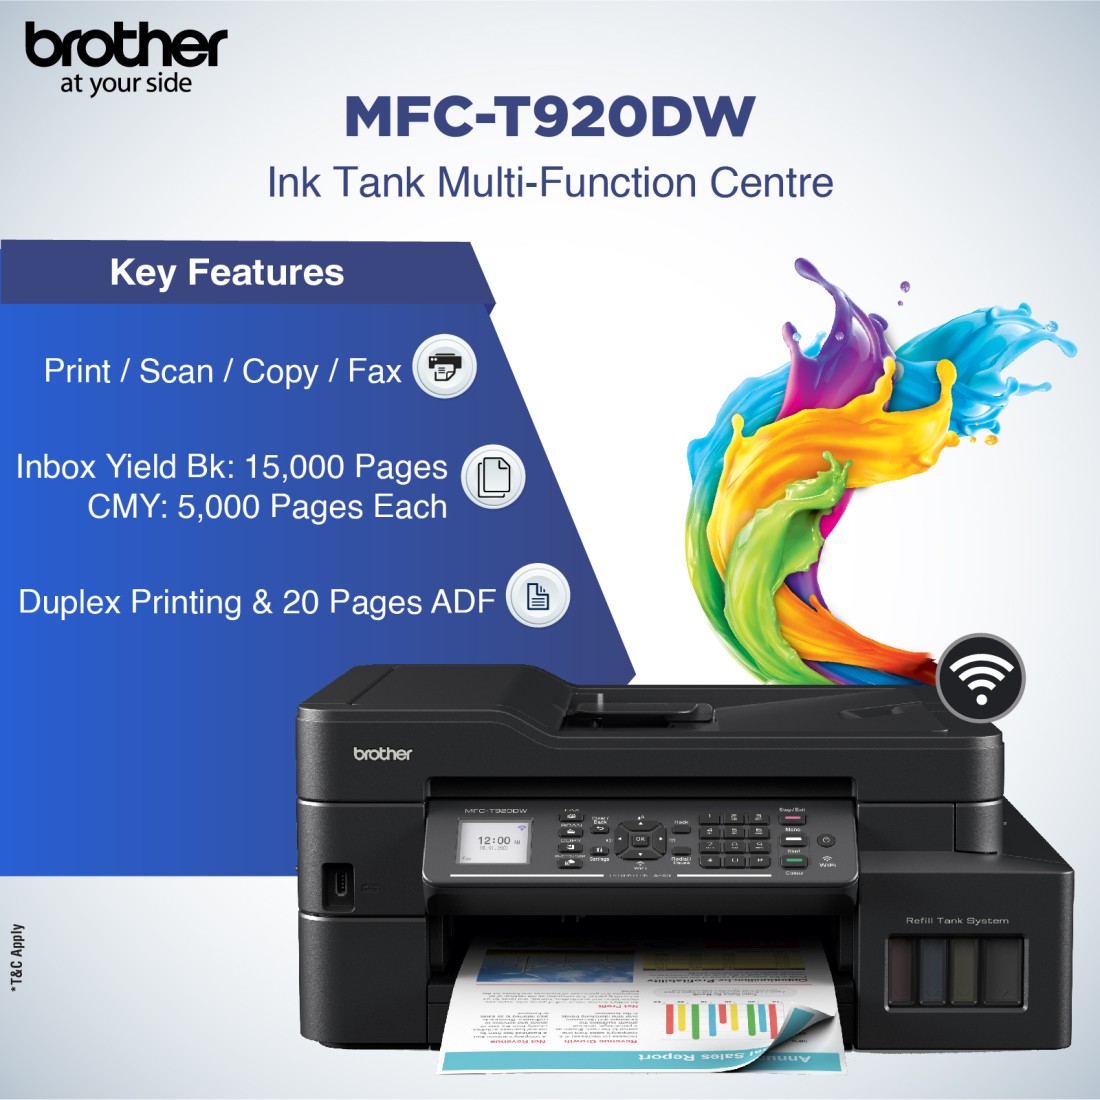 Impresora Brother MFC T920DW Multifuncional Wifi, Duplex, ADF, Fax BROTHER